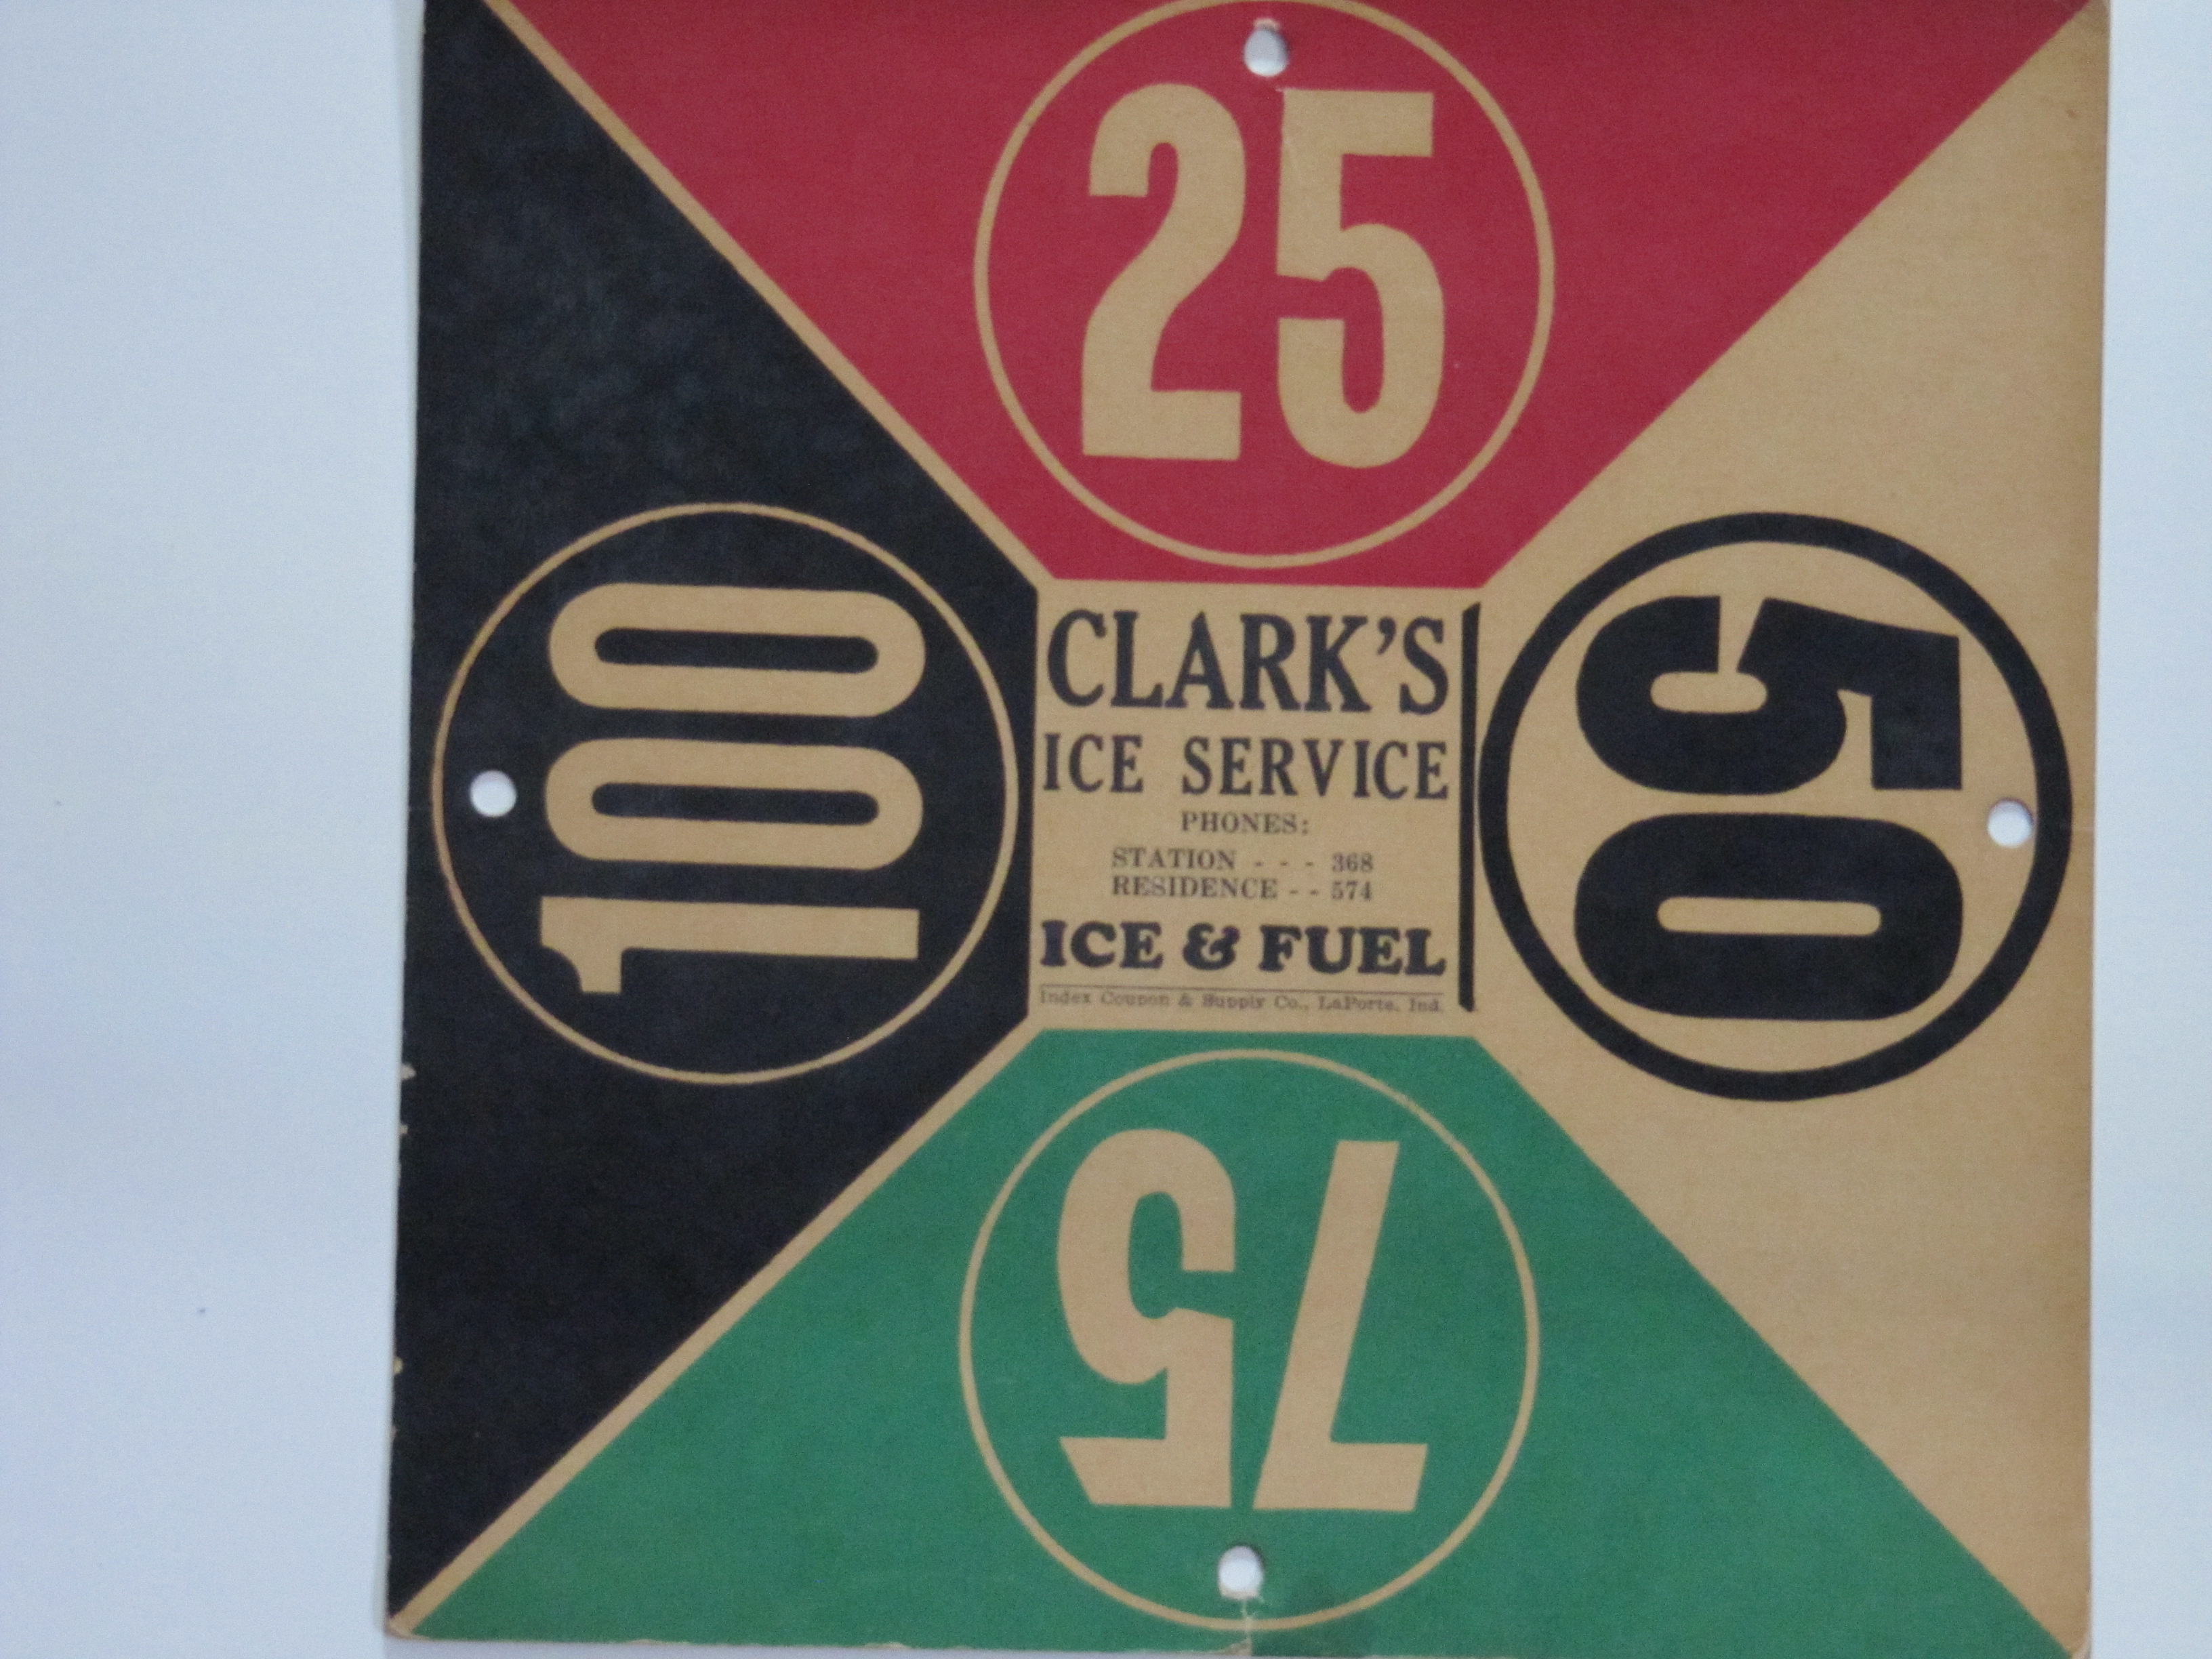 Clark's Ice Service